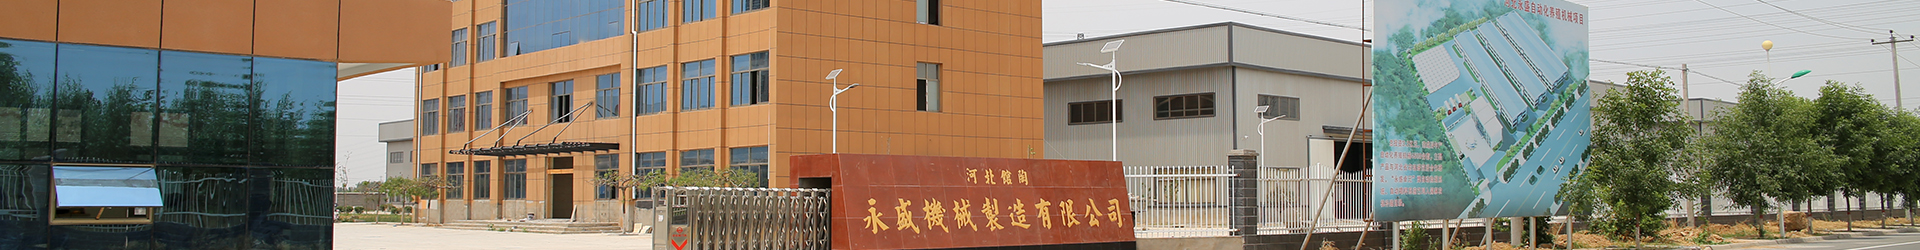 2009年河北展会现场-馆陶县永盛机械制造有限公司